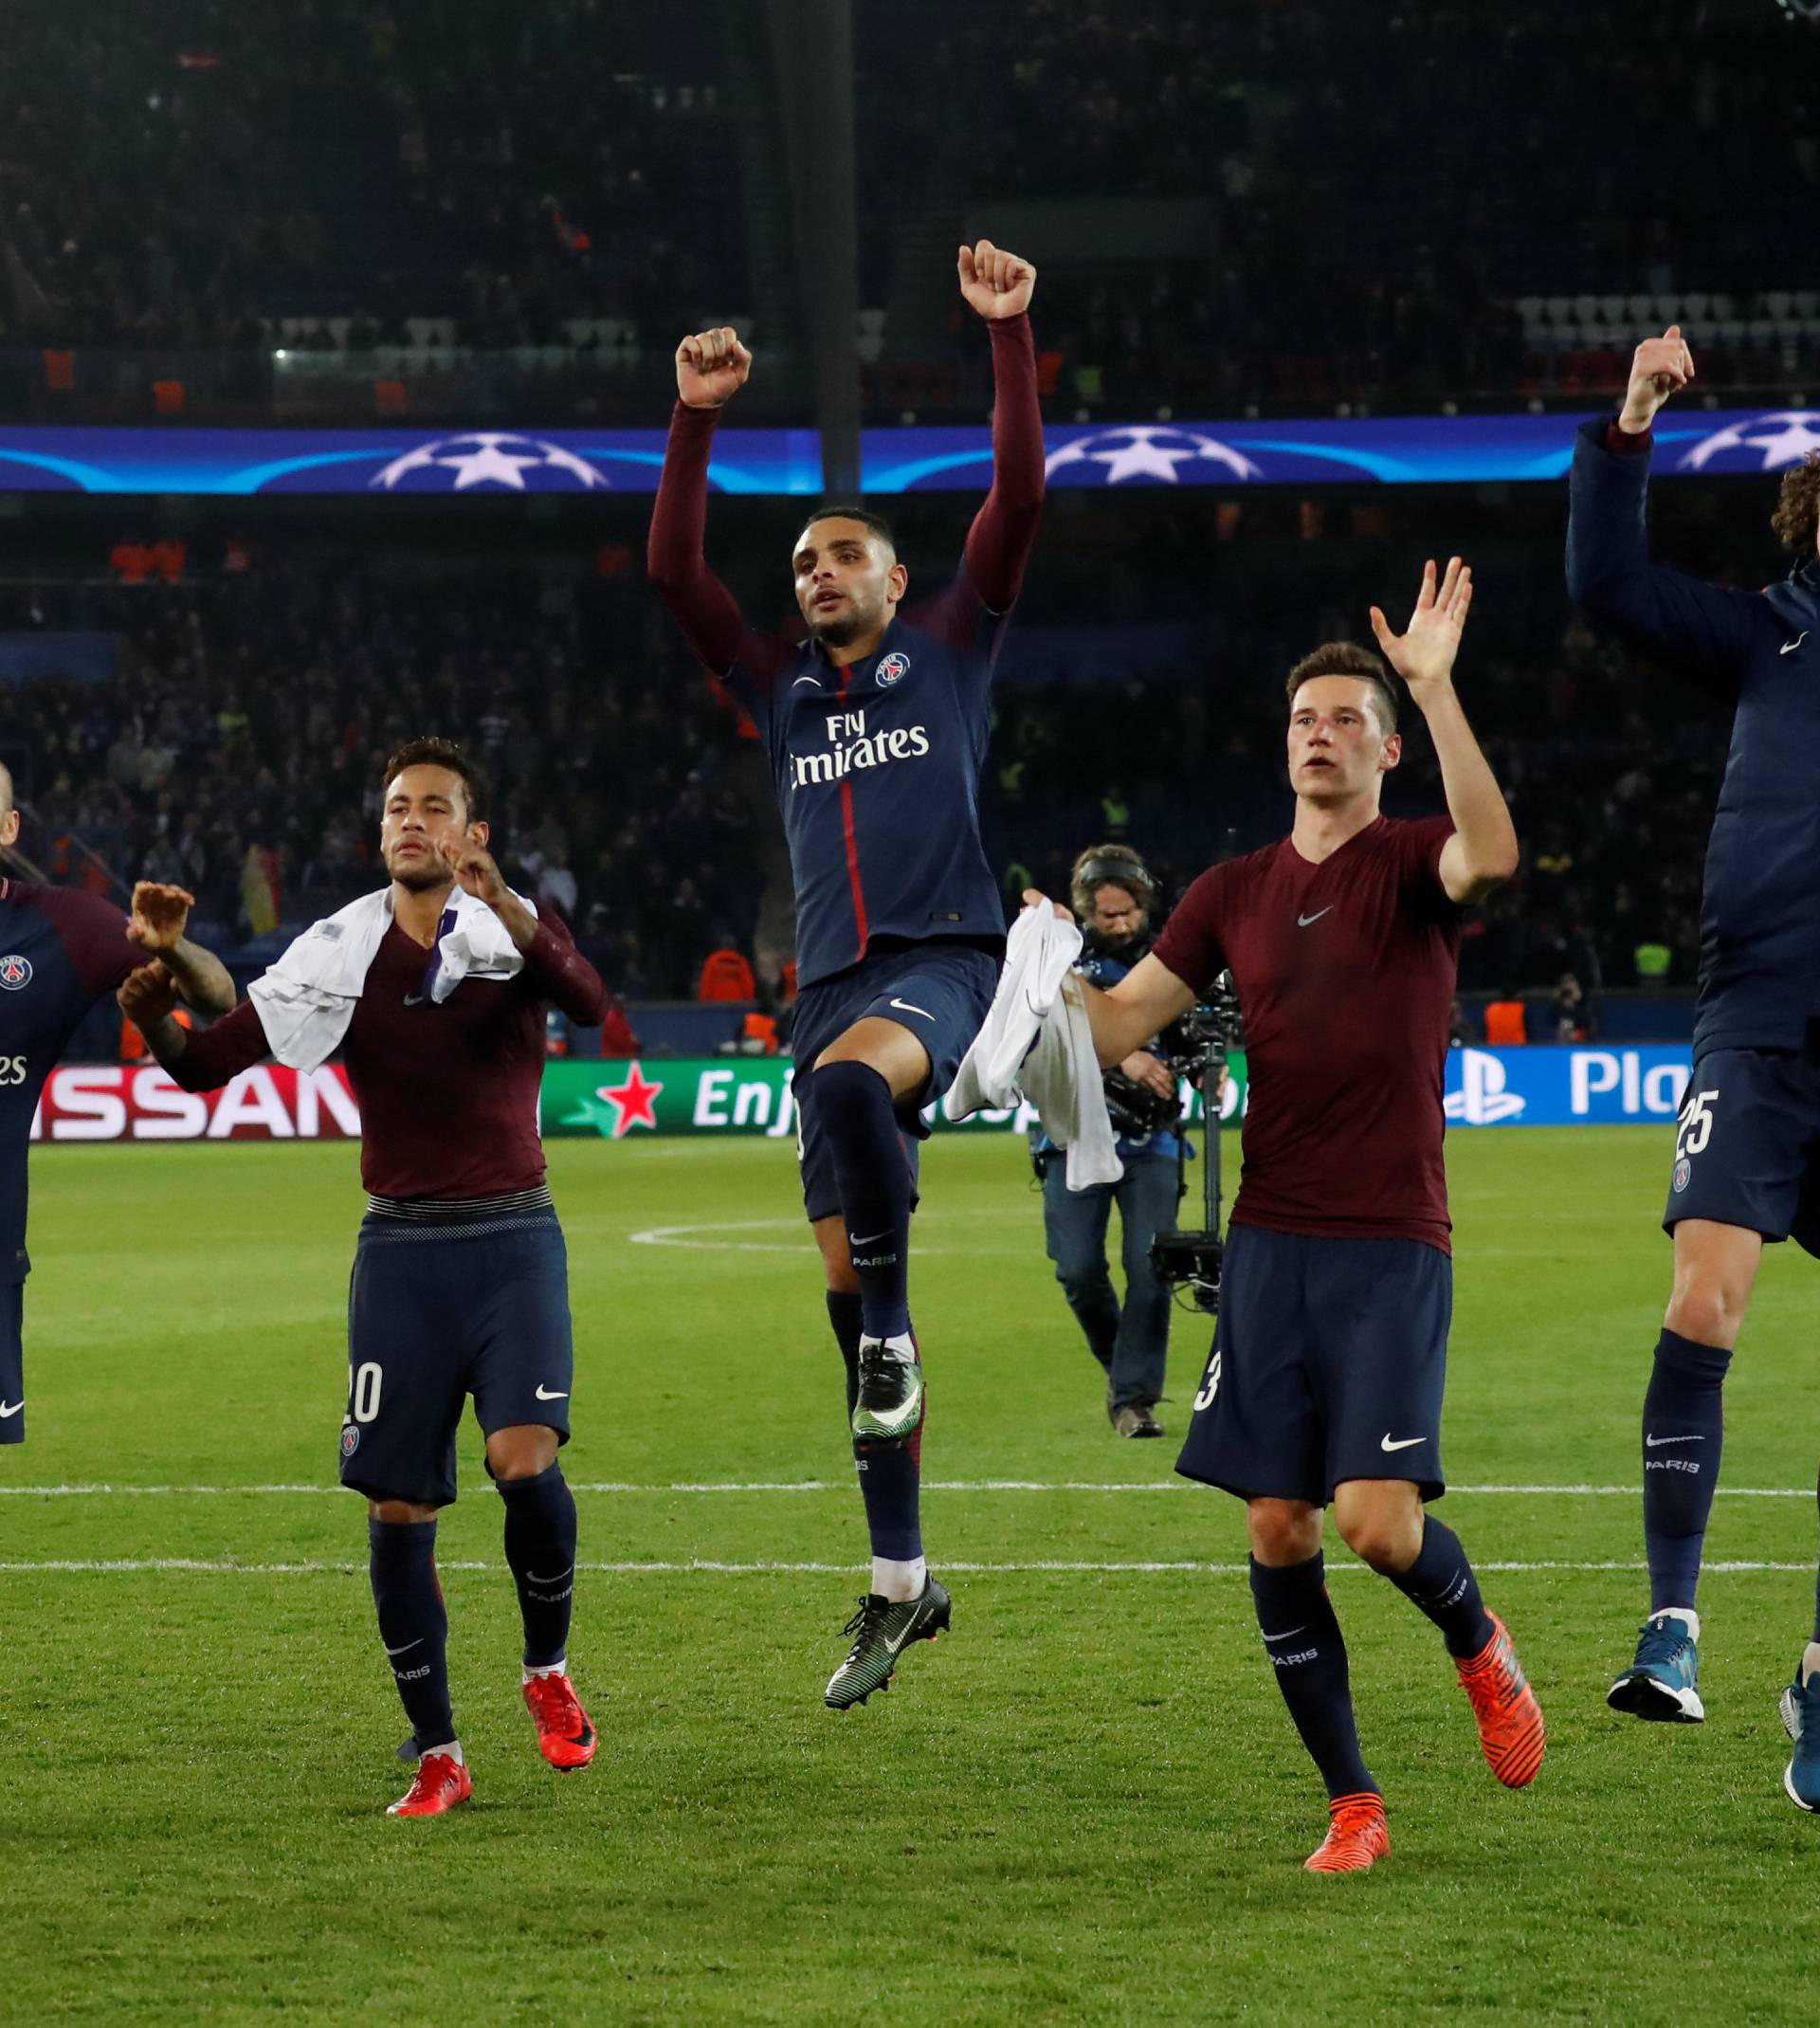 Champions League - Paris St Germain vs R.S.C. Anderlecht